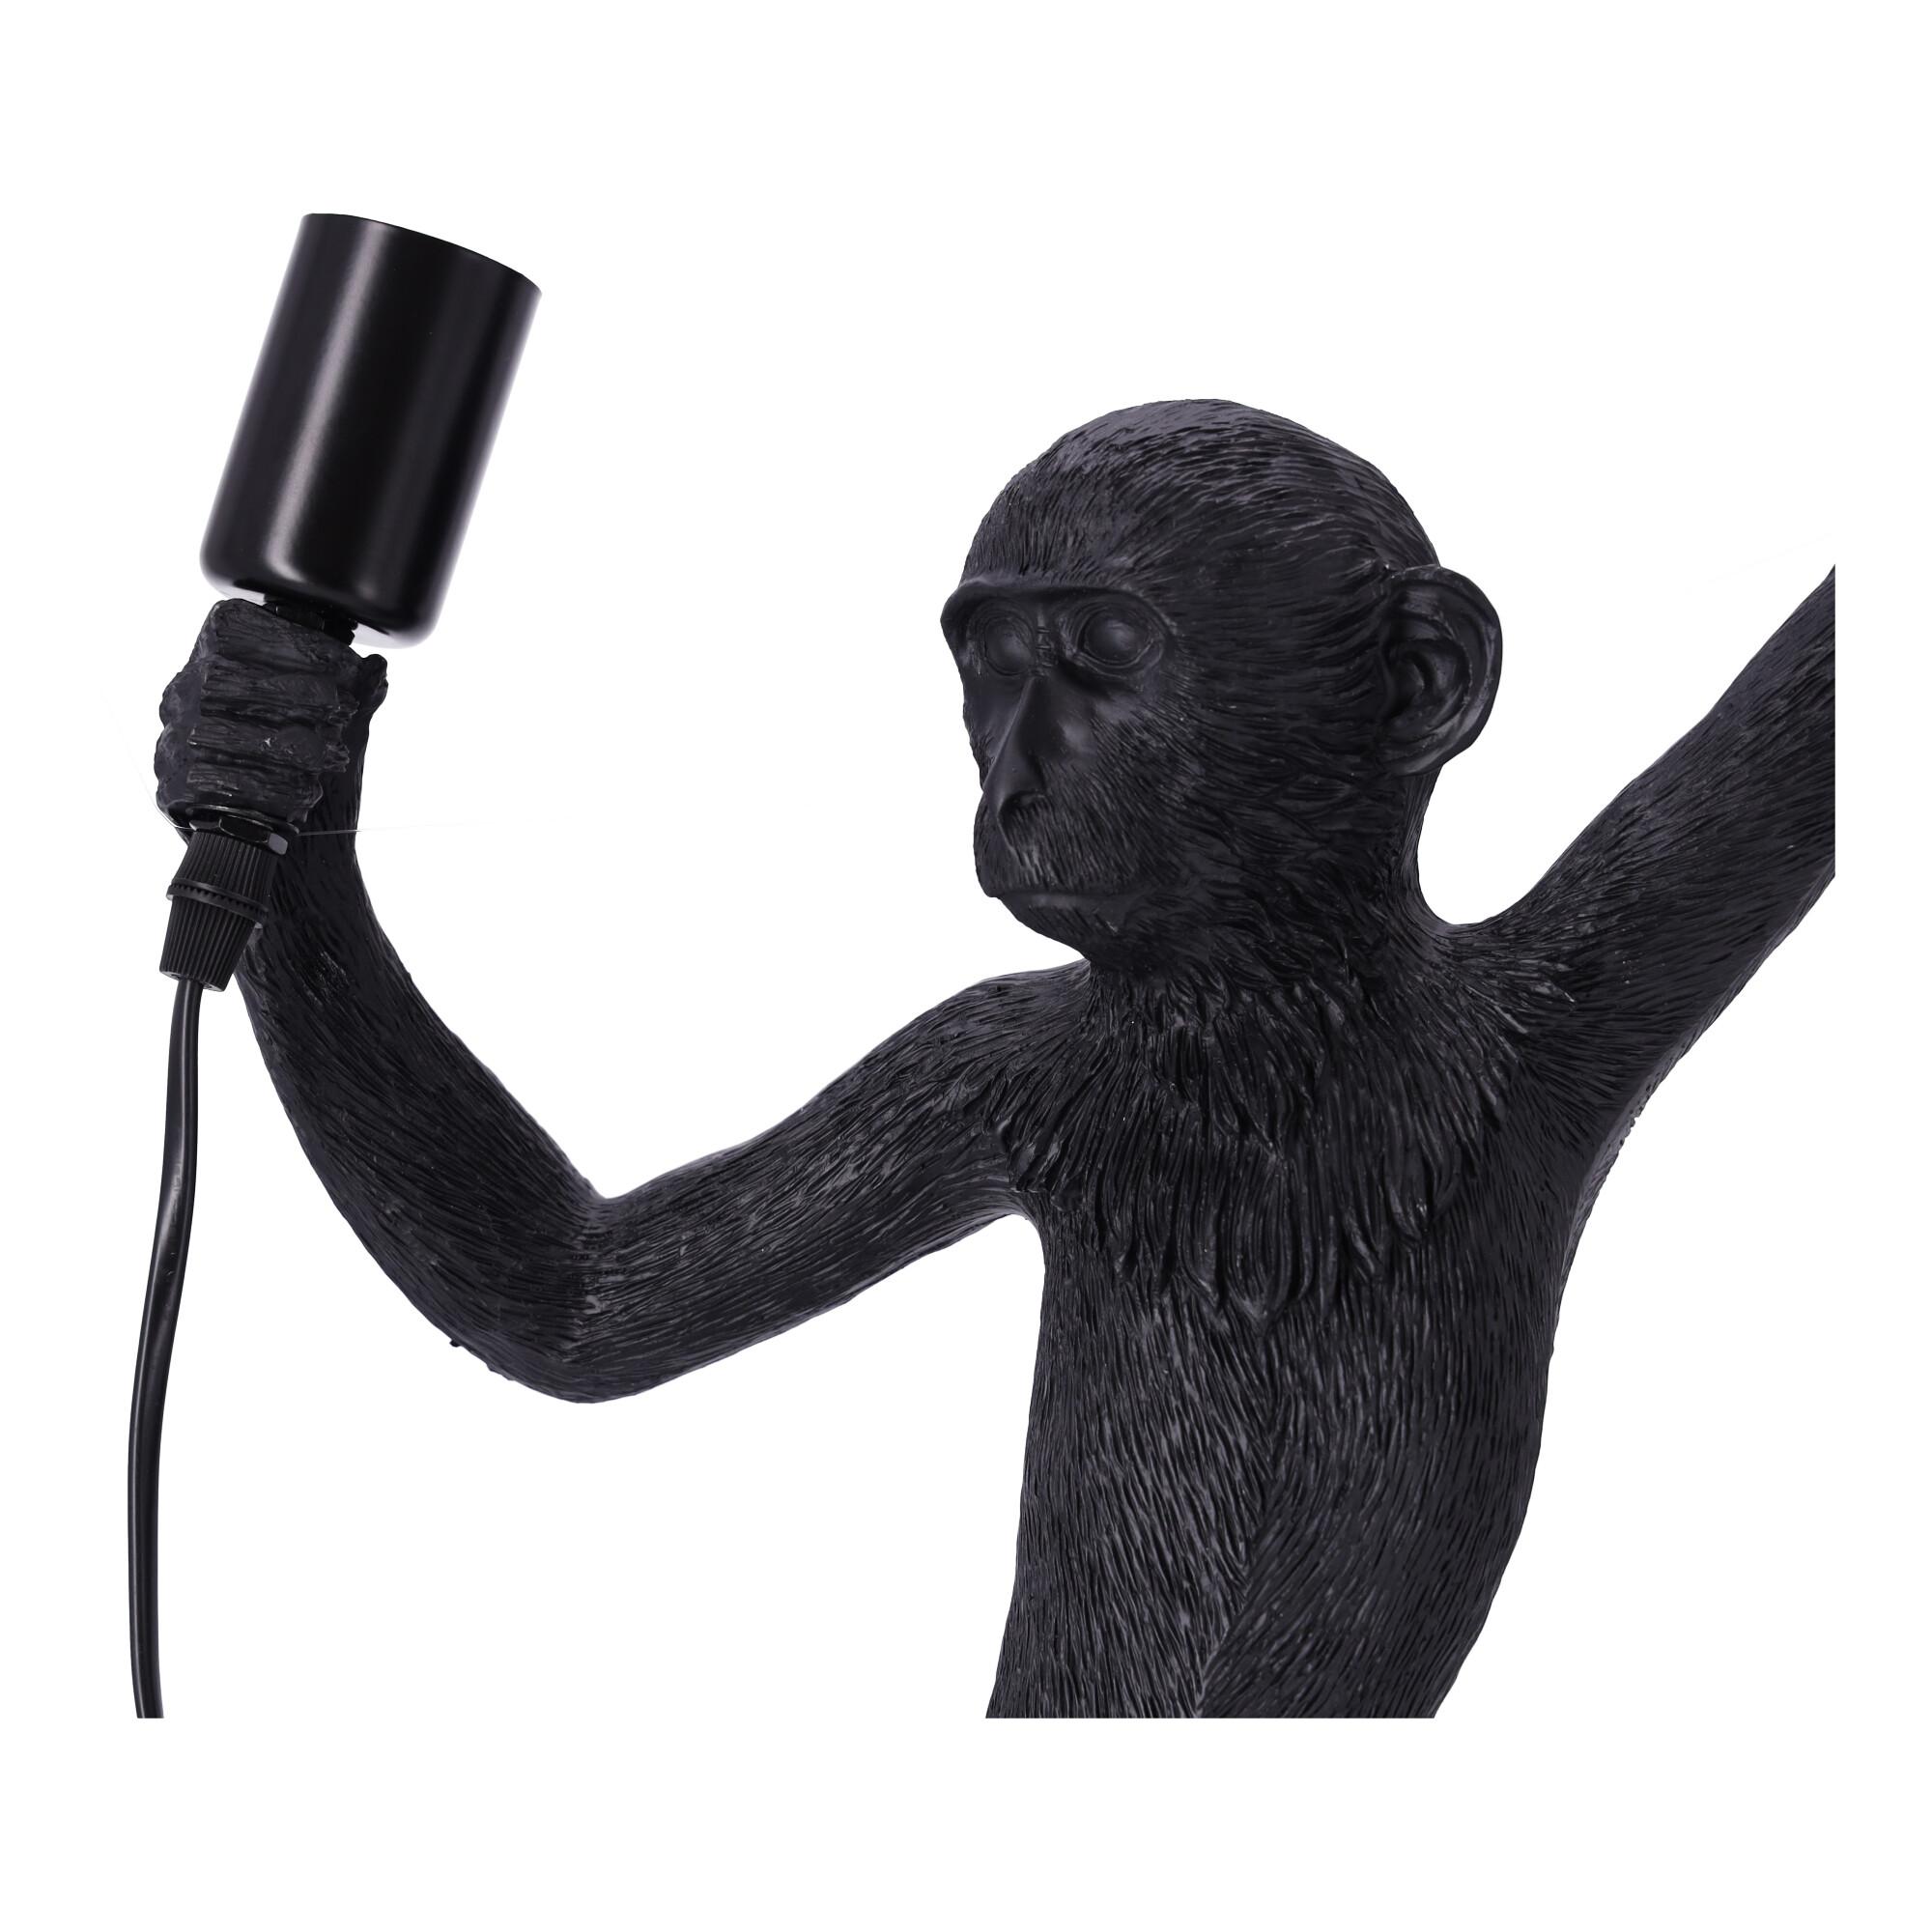 Stylish wall lamp - a monkey - left hand